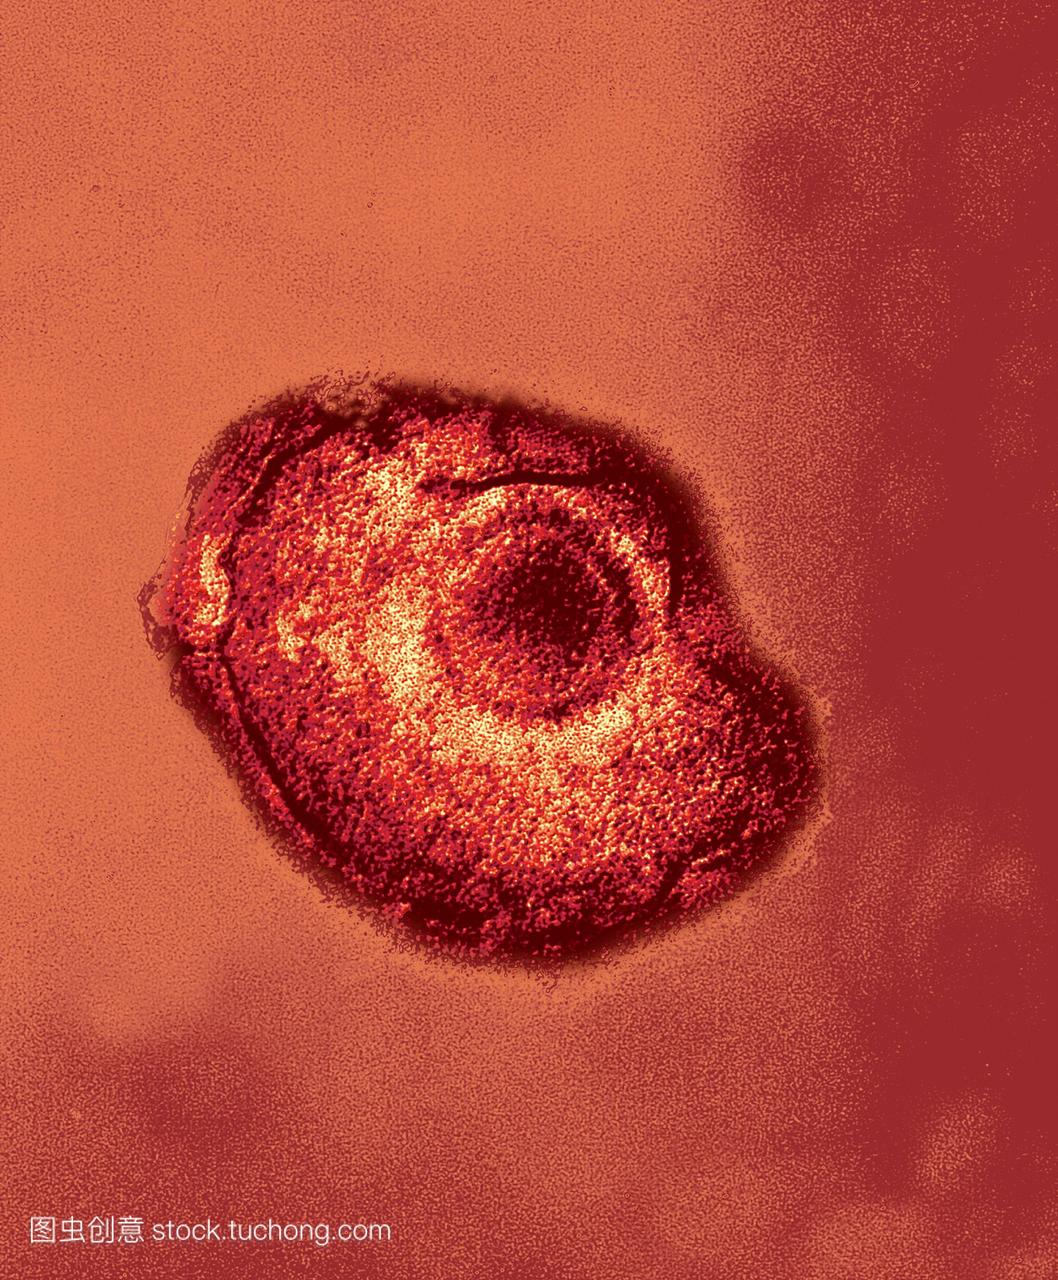 水痘带状疱疹病毒带状疱疹粒子彩色透射电子显